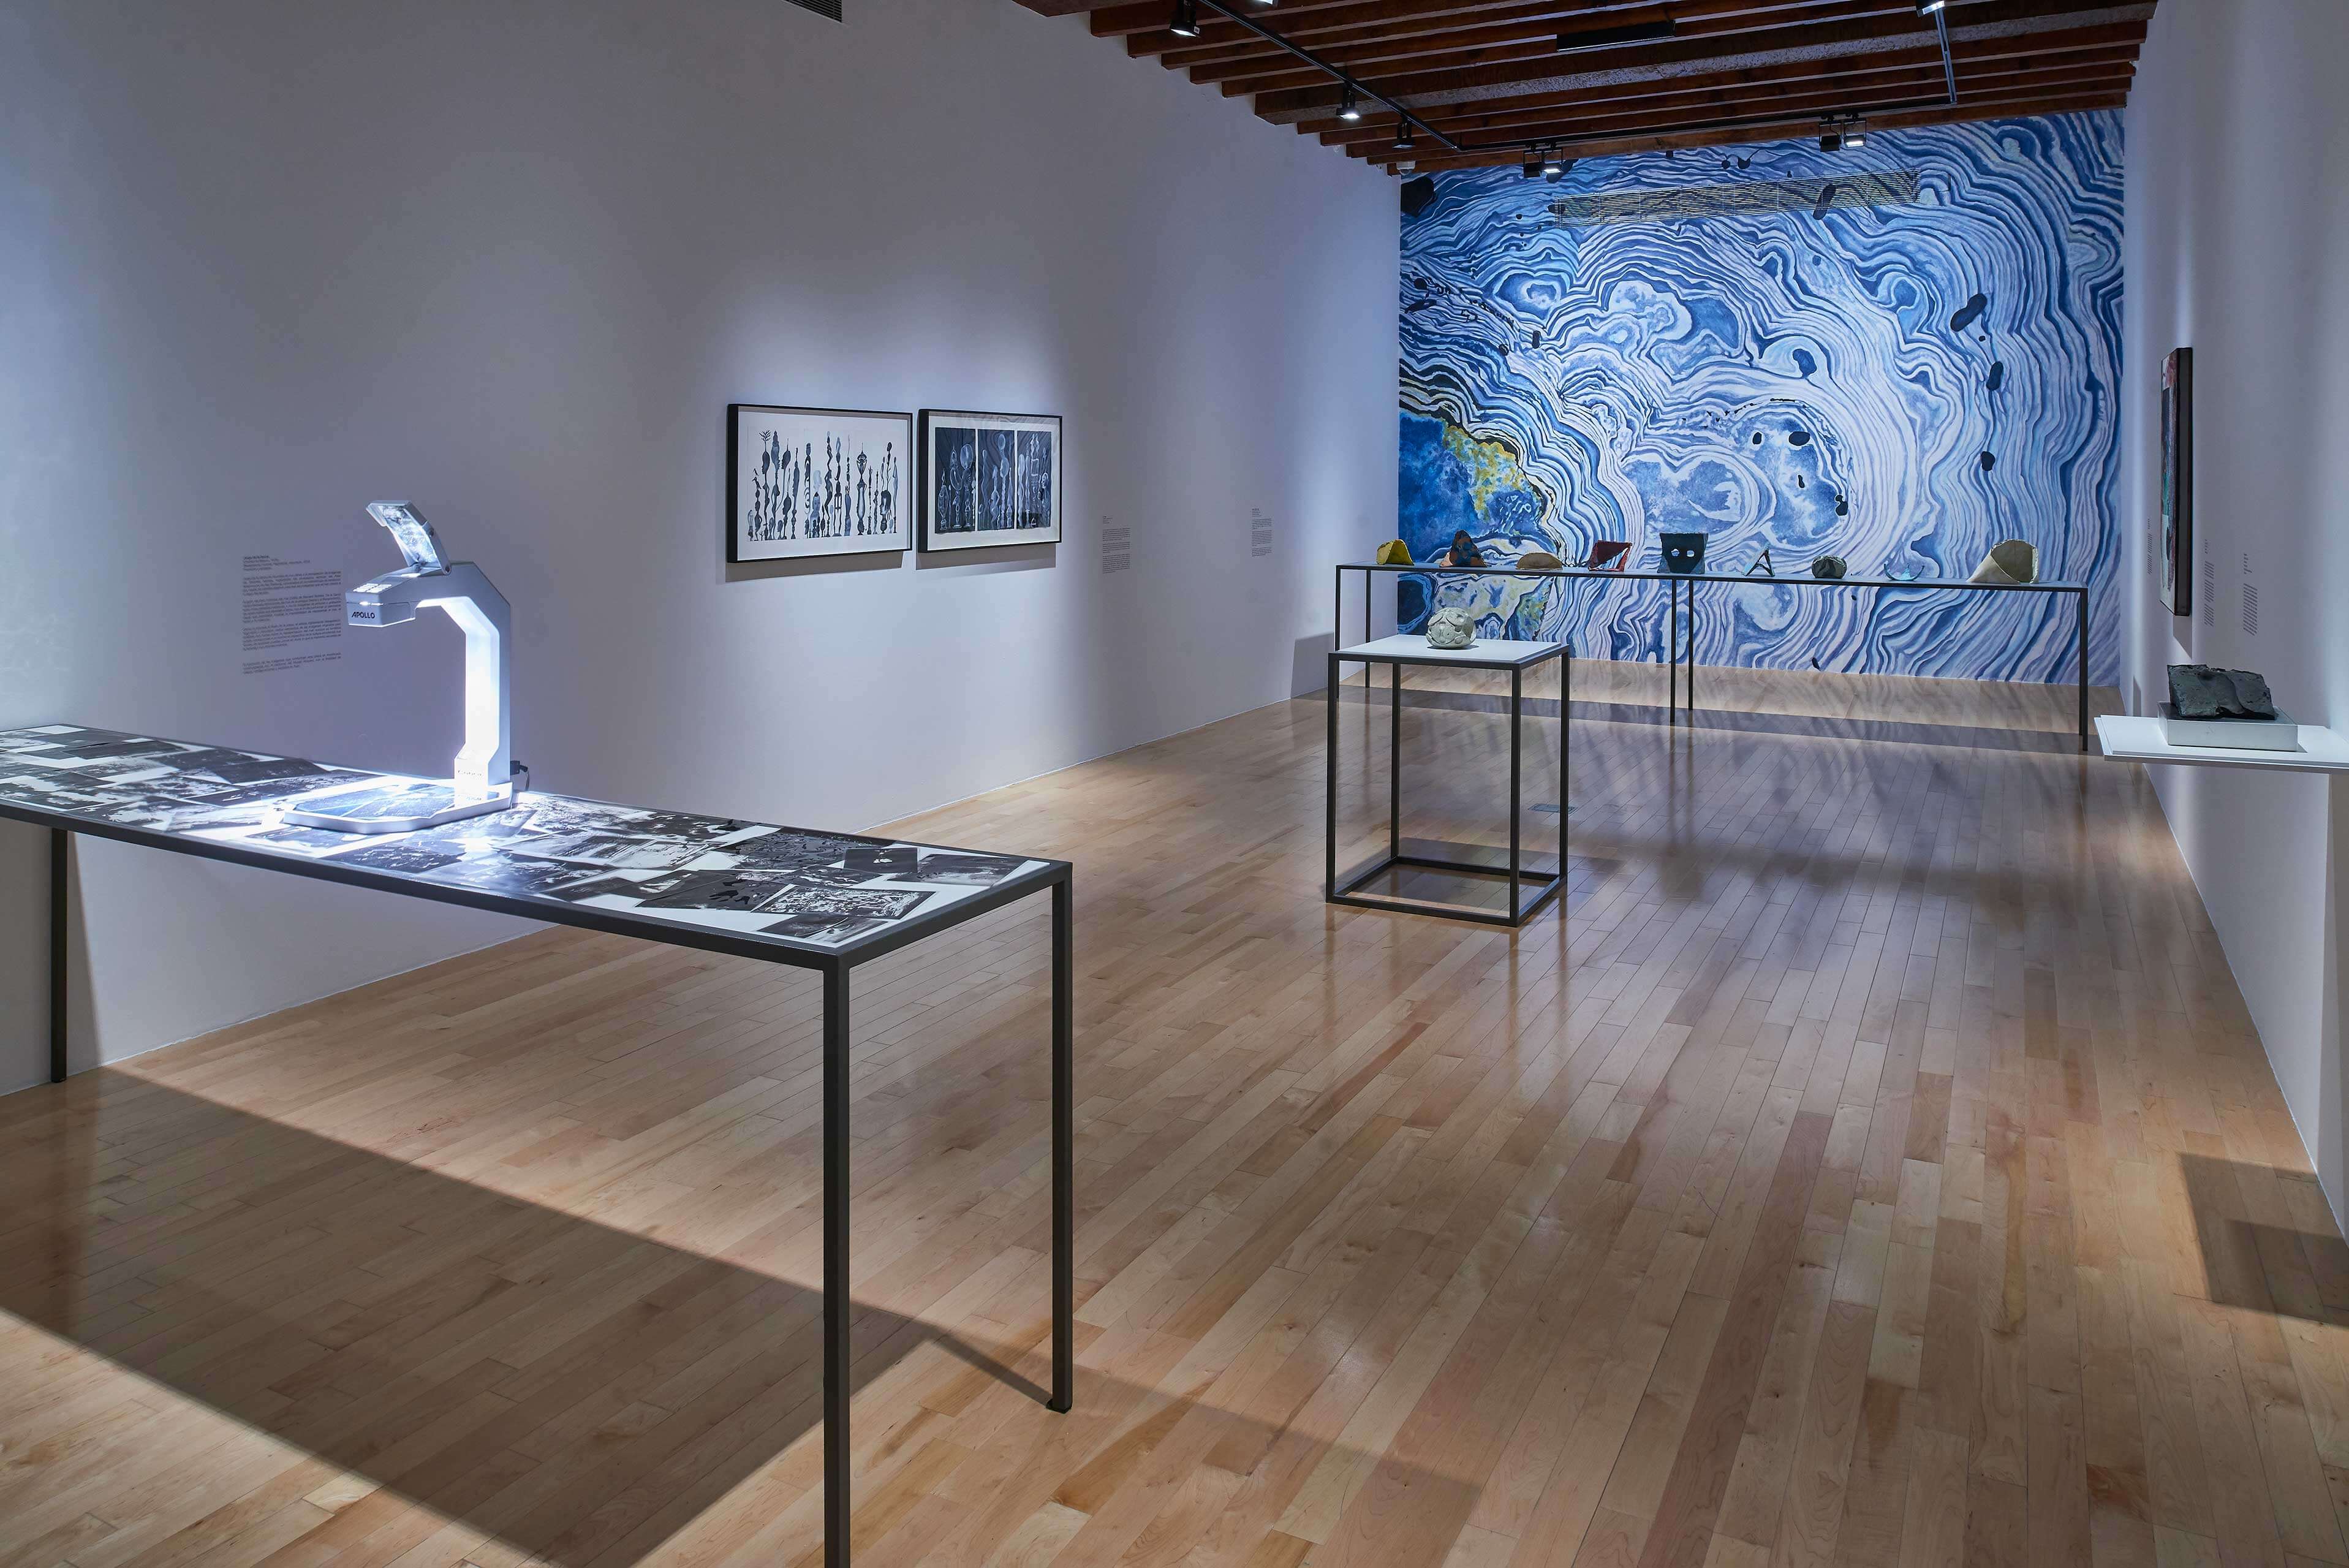 Desaparecer, mostrar, fragmentar, oscurecer | El tiempo en las cosas II. Salas de Arte Contemporáneo | Museo Amparo, Puebla